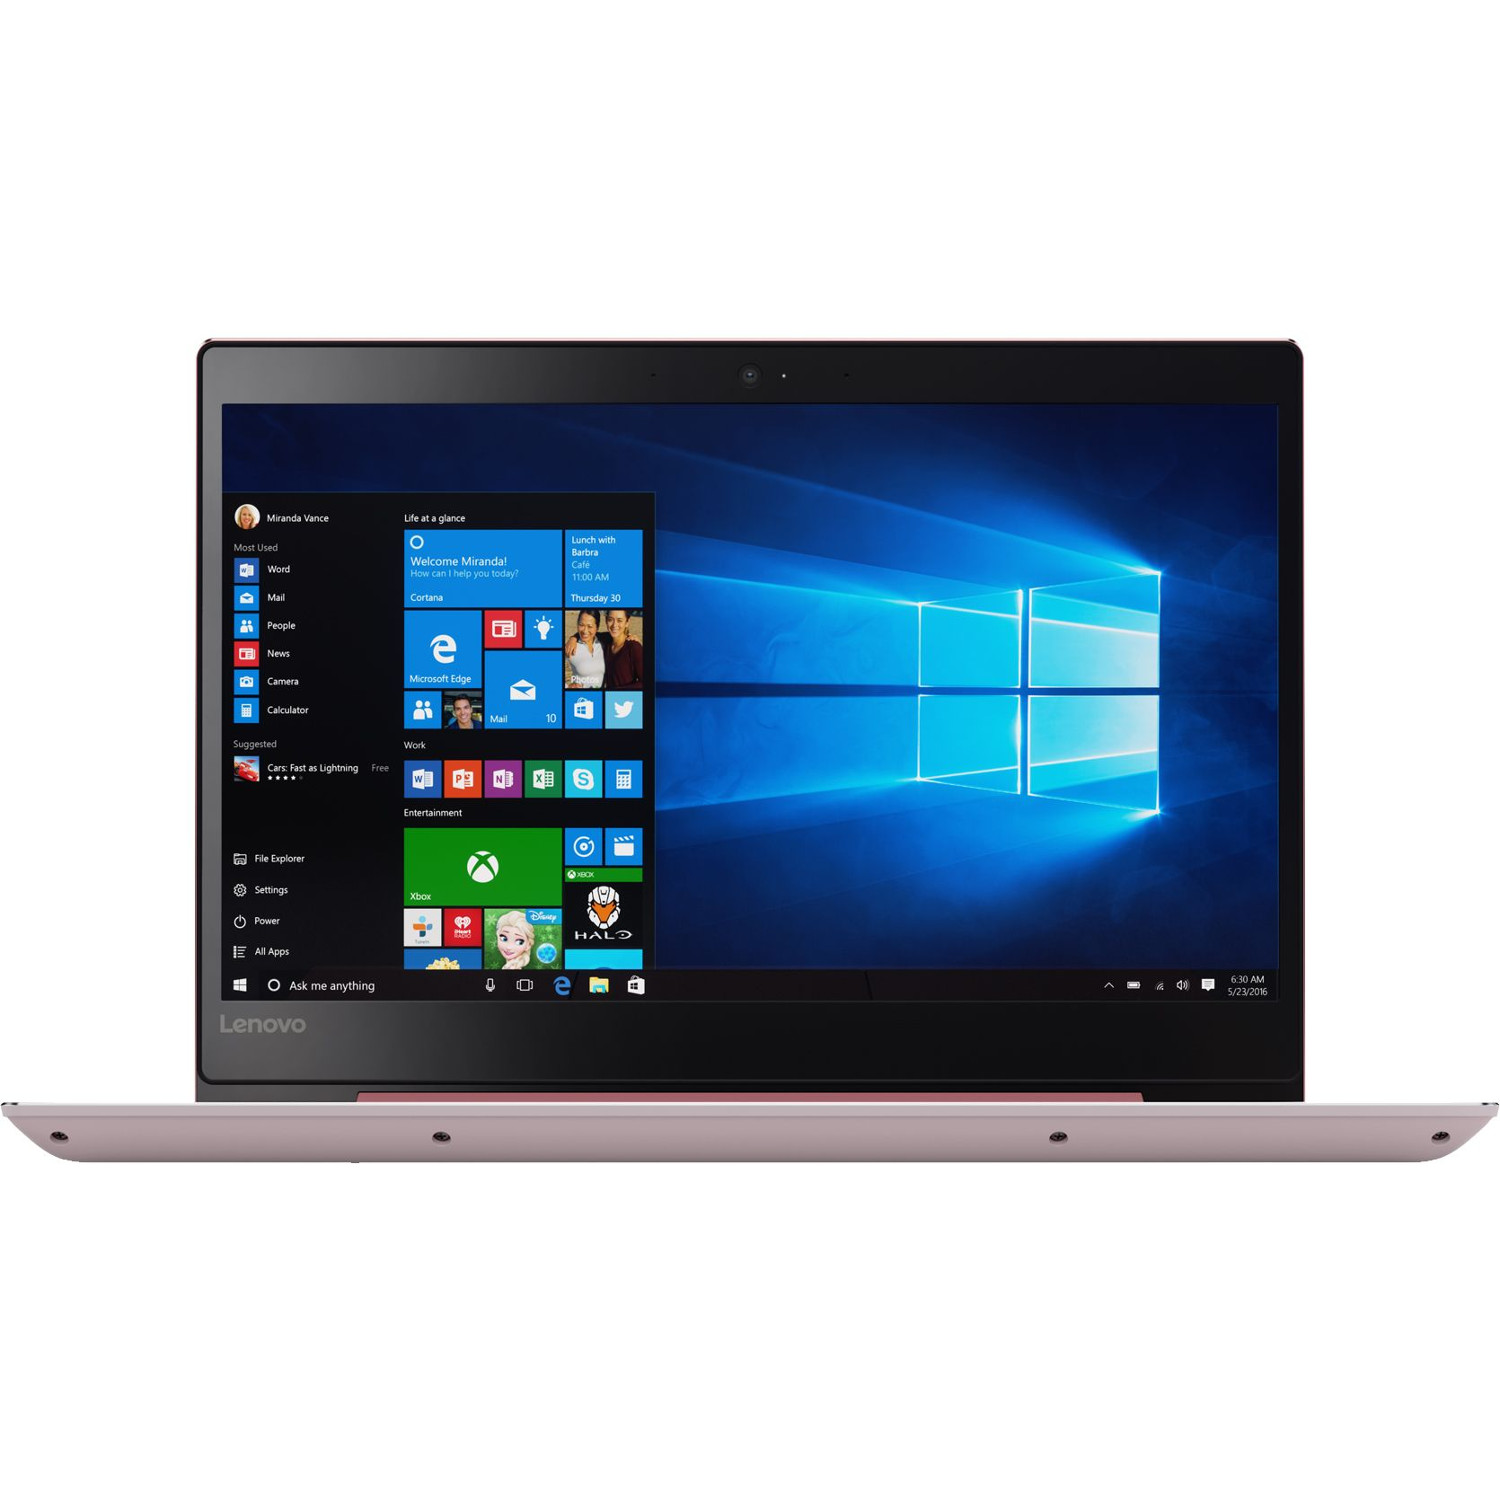 Laptop Lenovo IdeaPad 520S-14IKB, Intel Core i5-7200U, 4GB DDR4, HDD 1TB + SSD 128GB, Intel HD Graphics, Windows 10 Home